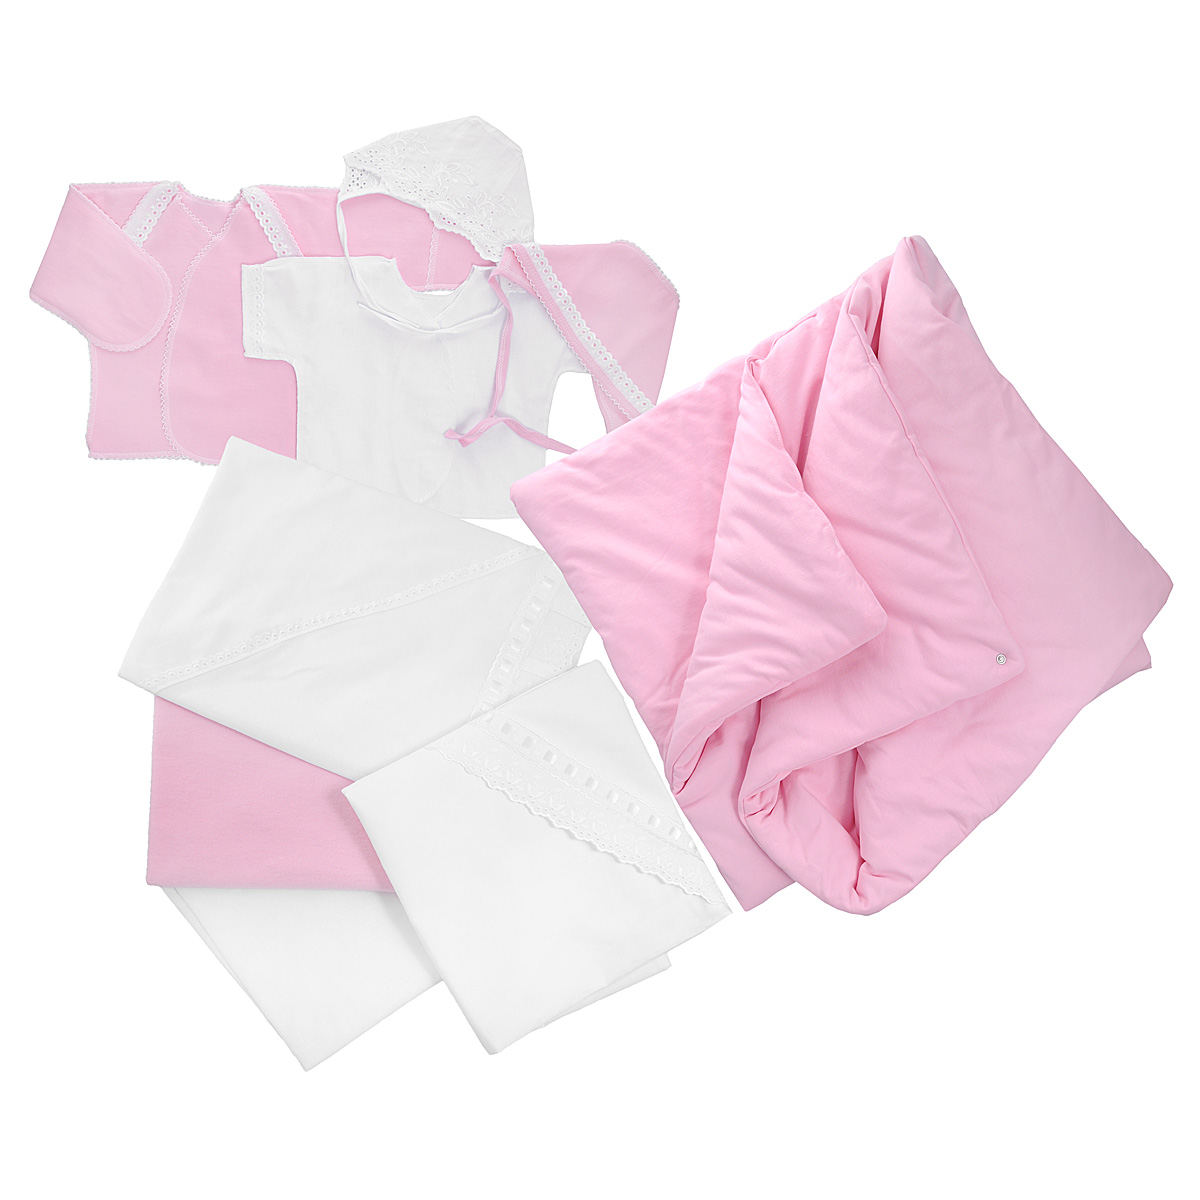 Комплект для новорожденного Трон-Плюс, 9 предметов, цвет: белый, розовый. 3476. Размер 56, 1 месяц